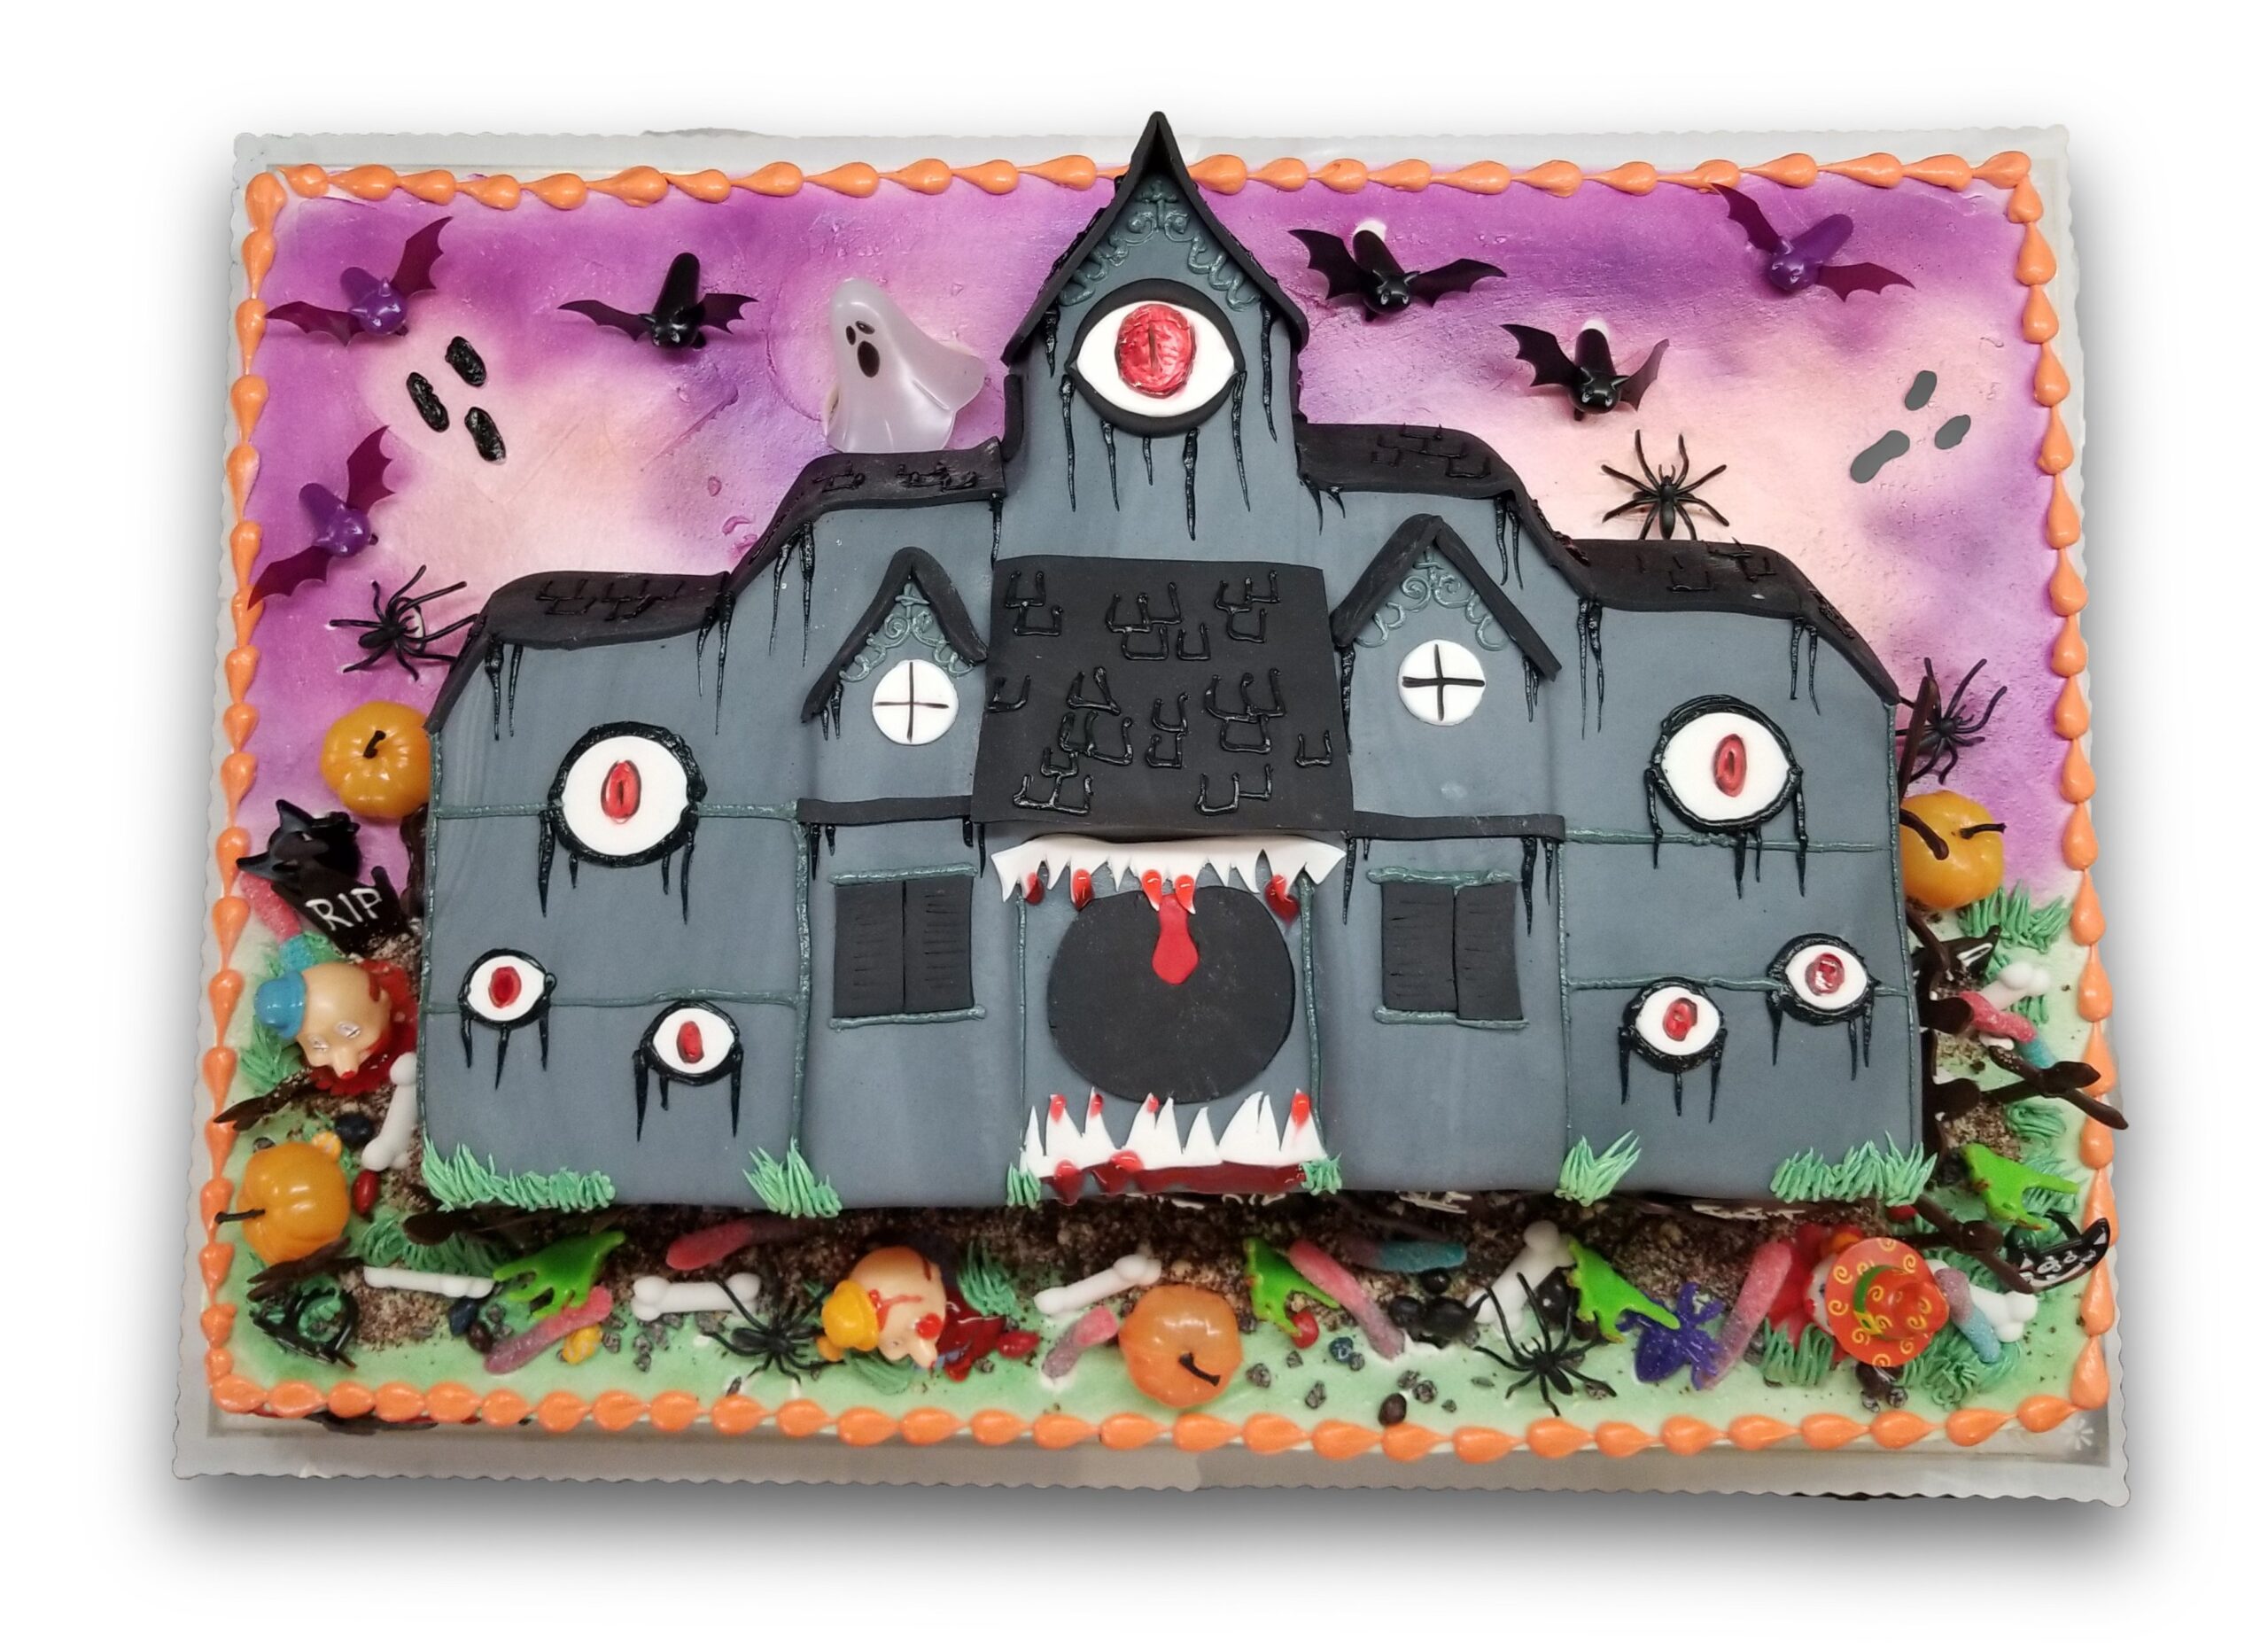 Fondant haunted house cake with airbrished background